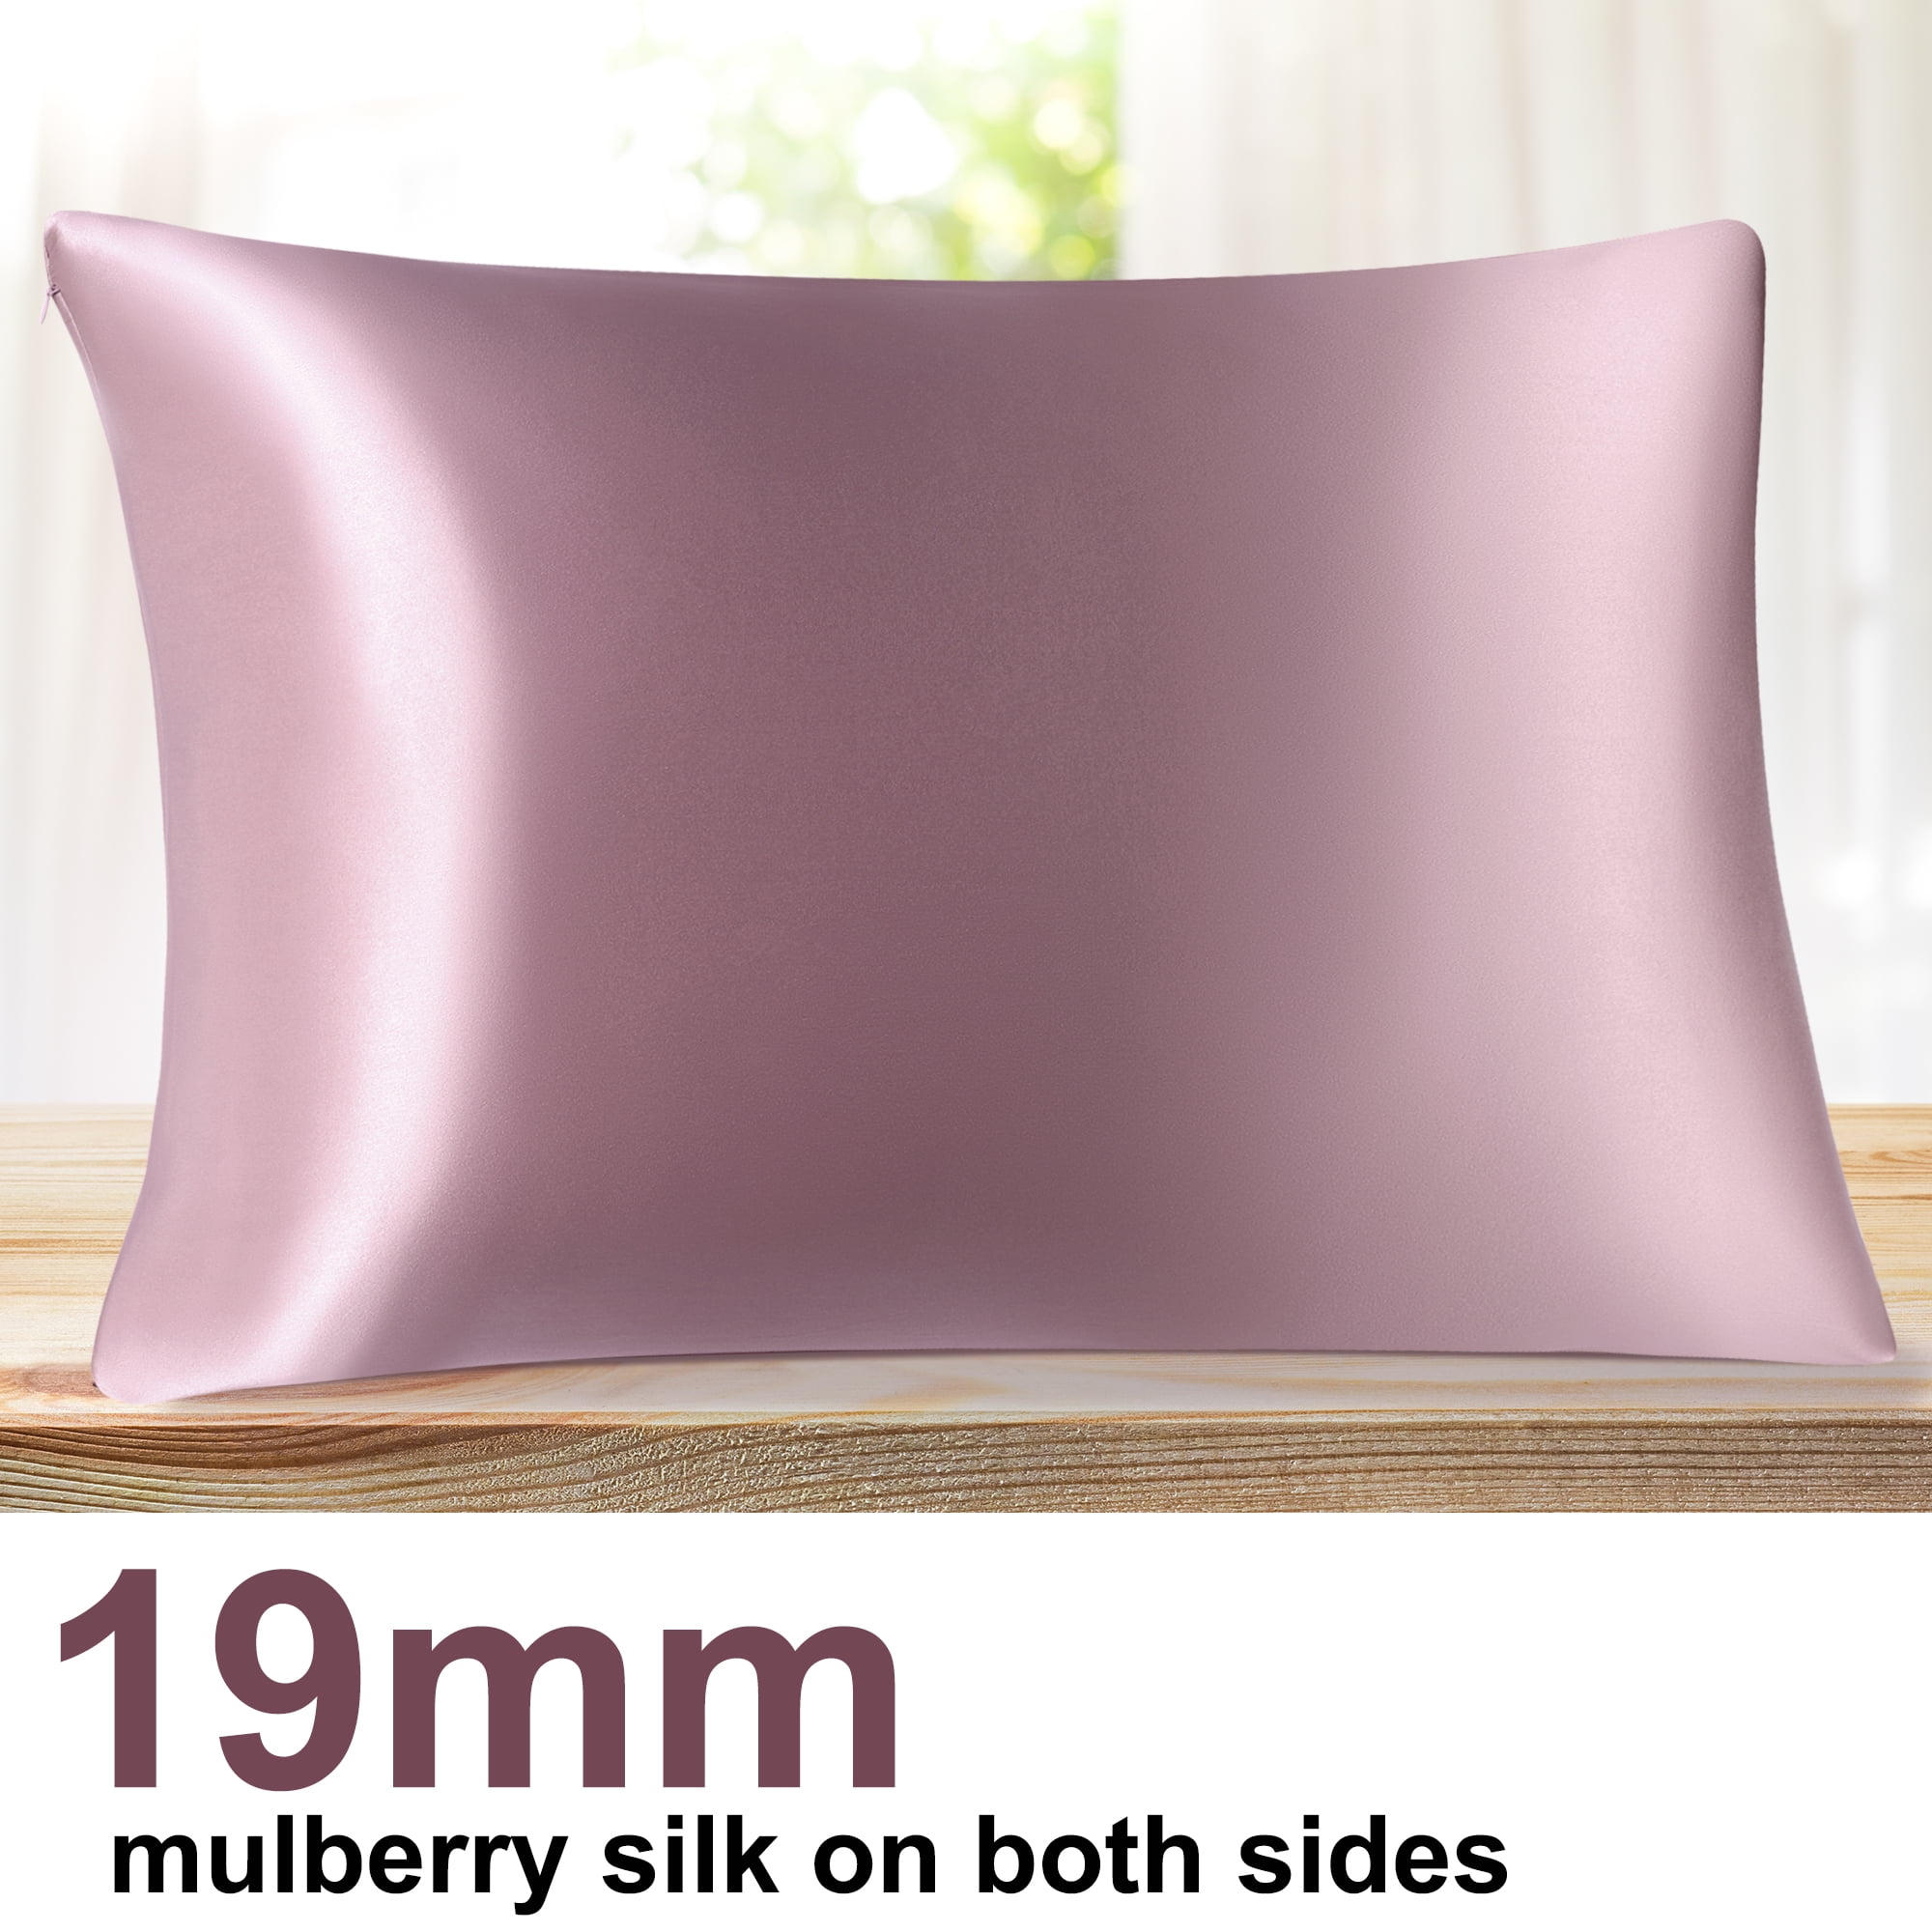 Details about   Blissford Luxury Satin Pillowcase w/ Hidden Zipper Standard 20" x 26" Purple 